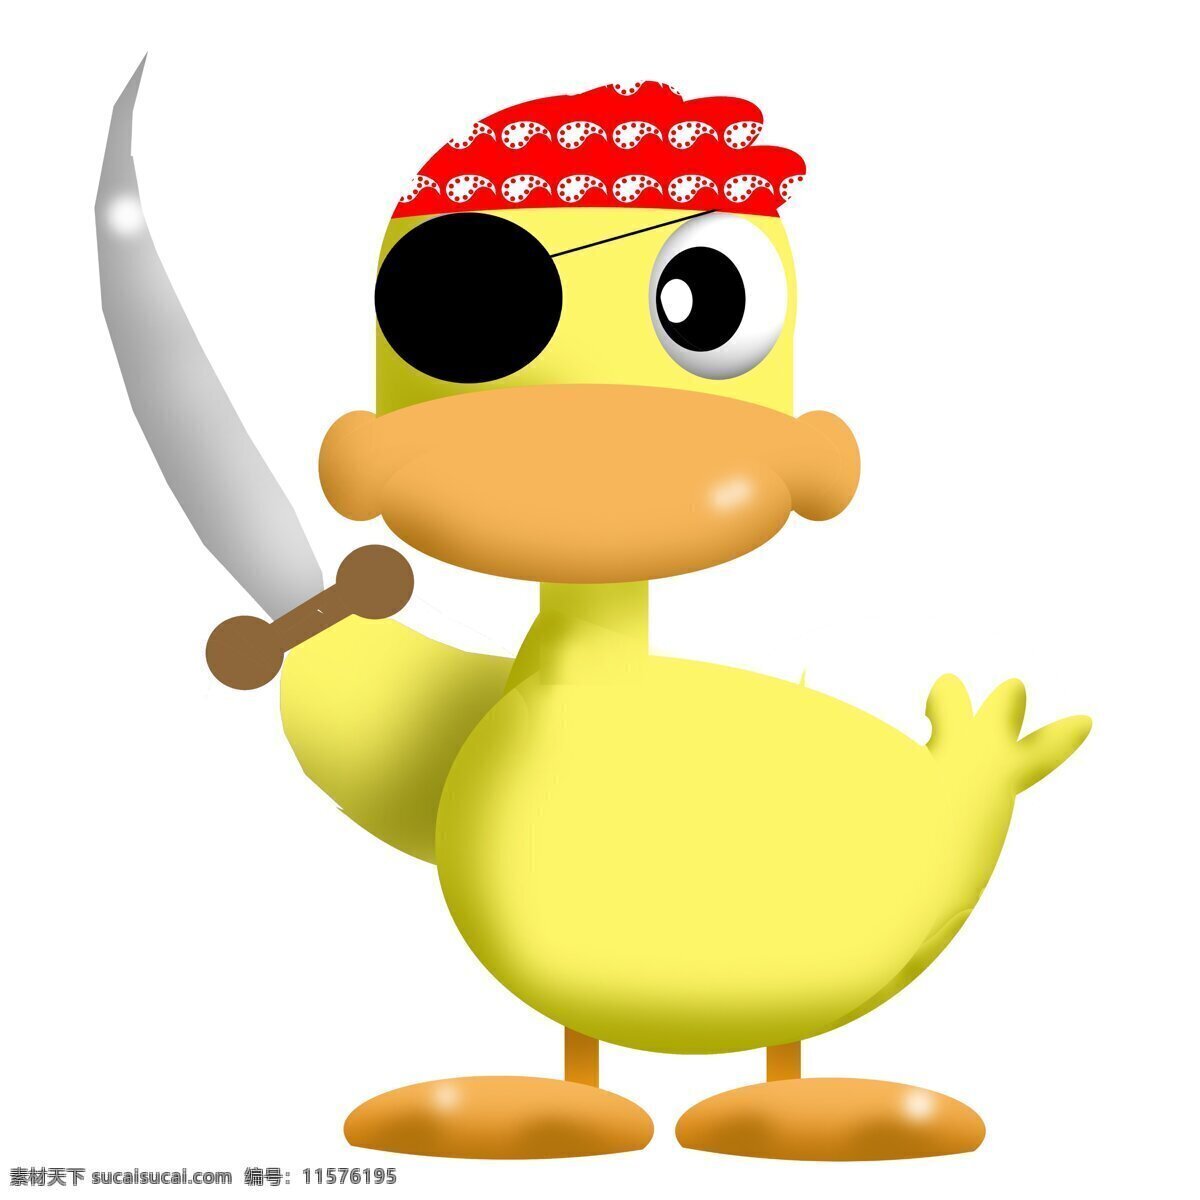 鸭子 刀 动漫动画 可爱 玩具 鸭子设计素材 鸭子模板下载 黄鸭子 打劫 劫匪 一只眼 psd源文件